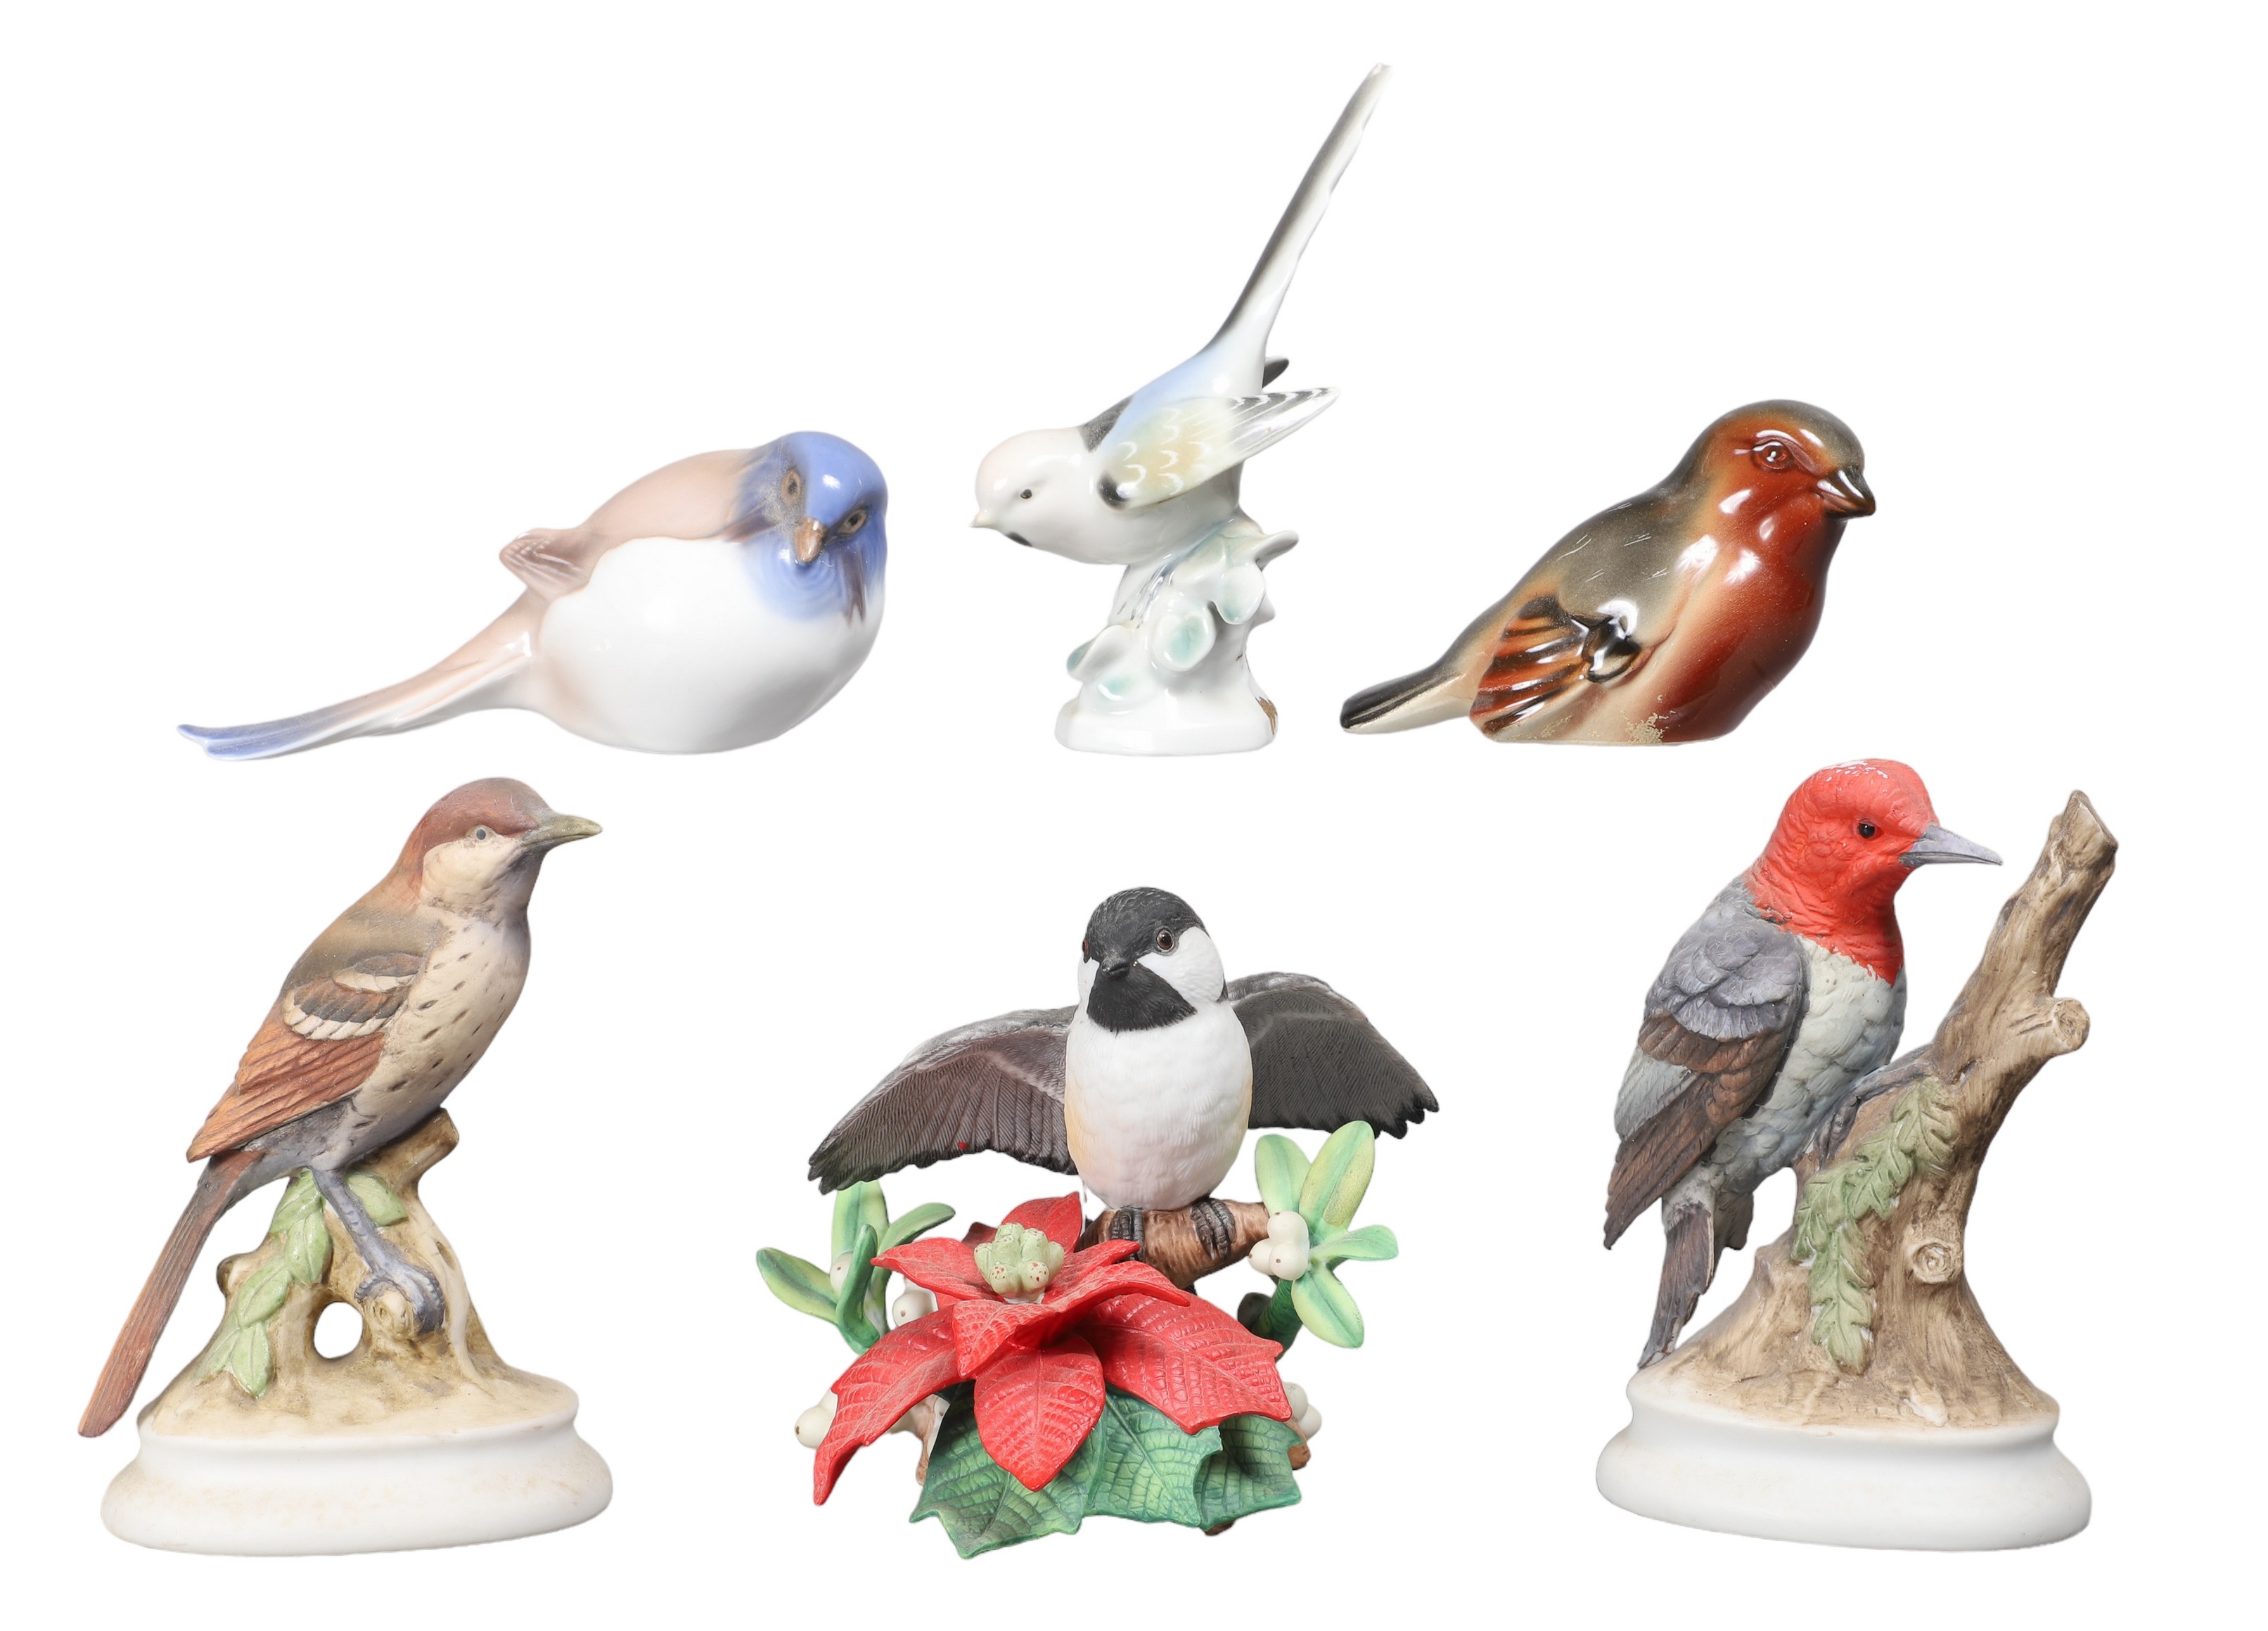  6 Porcelain bird figurines including 2e117c